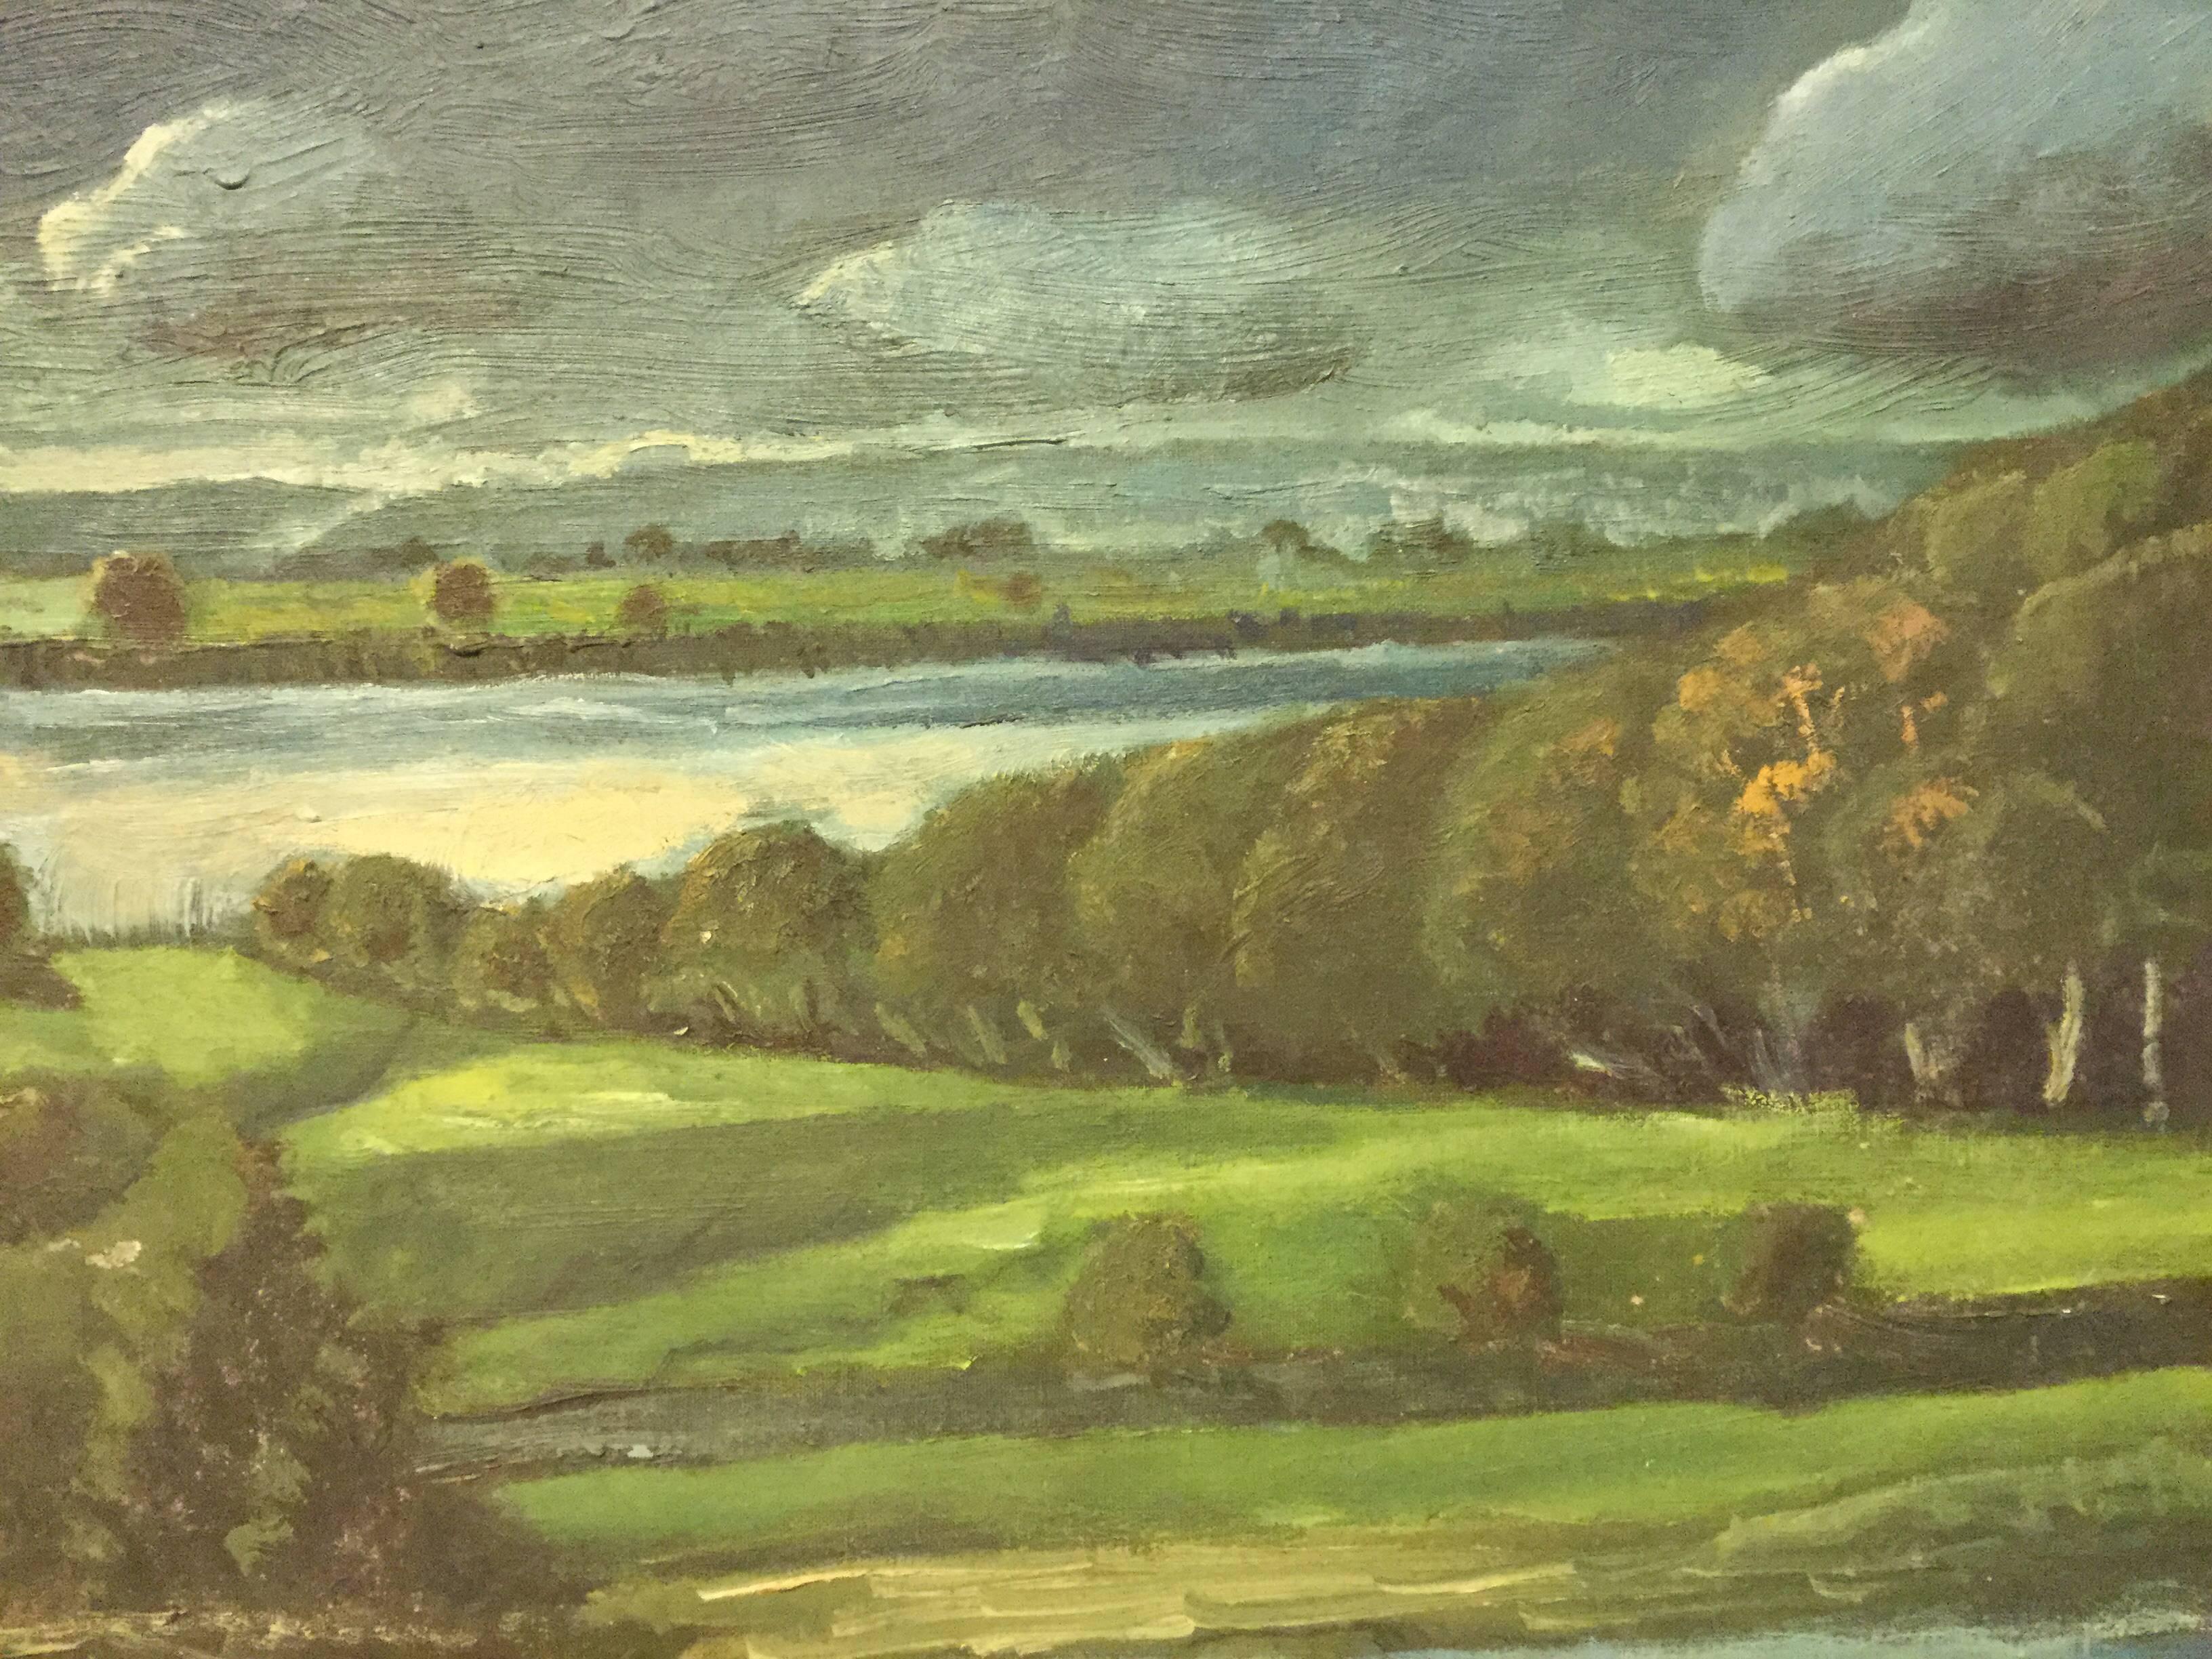 Landscape/ seascape oil painting Warren Point, Little Compton, Rhode Island. Formalist and moody scene.